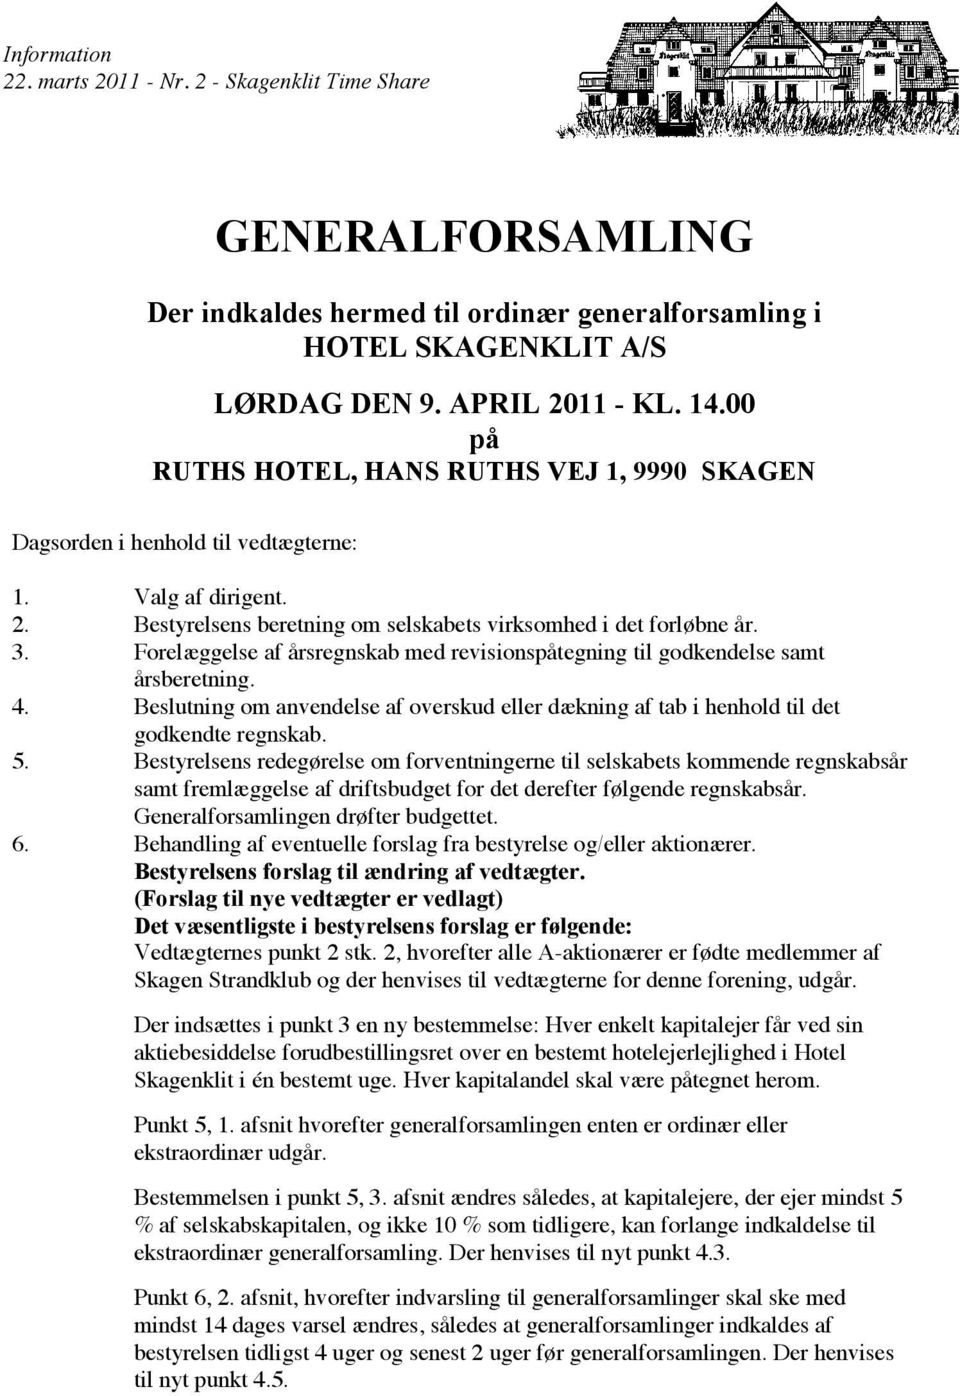 SKAGENKLIT A/S Der indkaldes hermed til ordinær generalforsamling i LØRDAG Der indkaldes HOTEL hermed SKAGENKLIT DEN 9. APRIL 2011 til ordinær generalforsamling A/S - KL. 14.